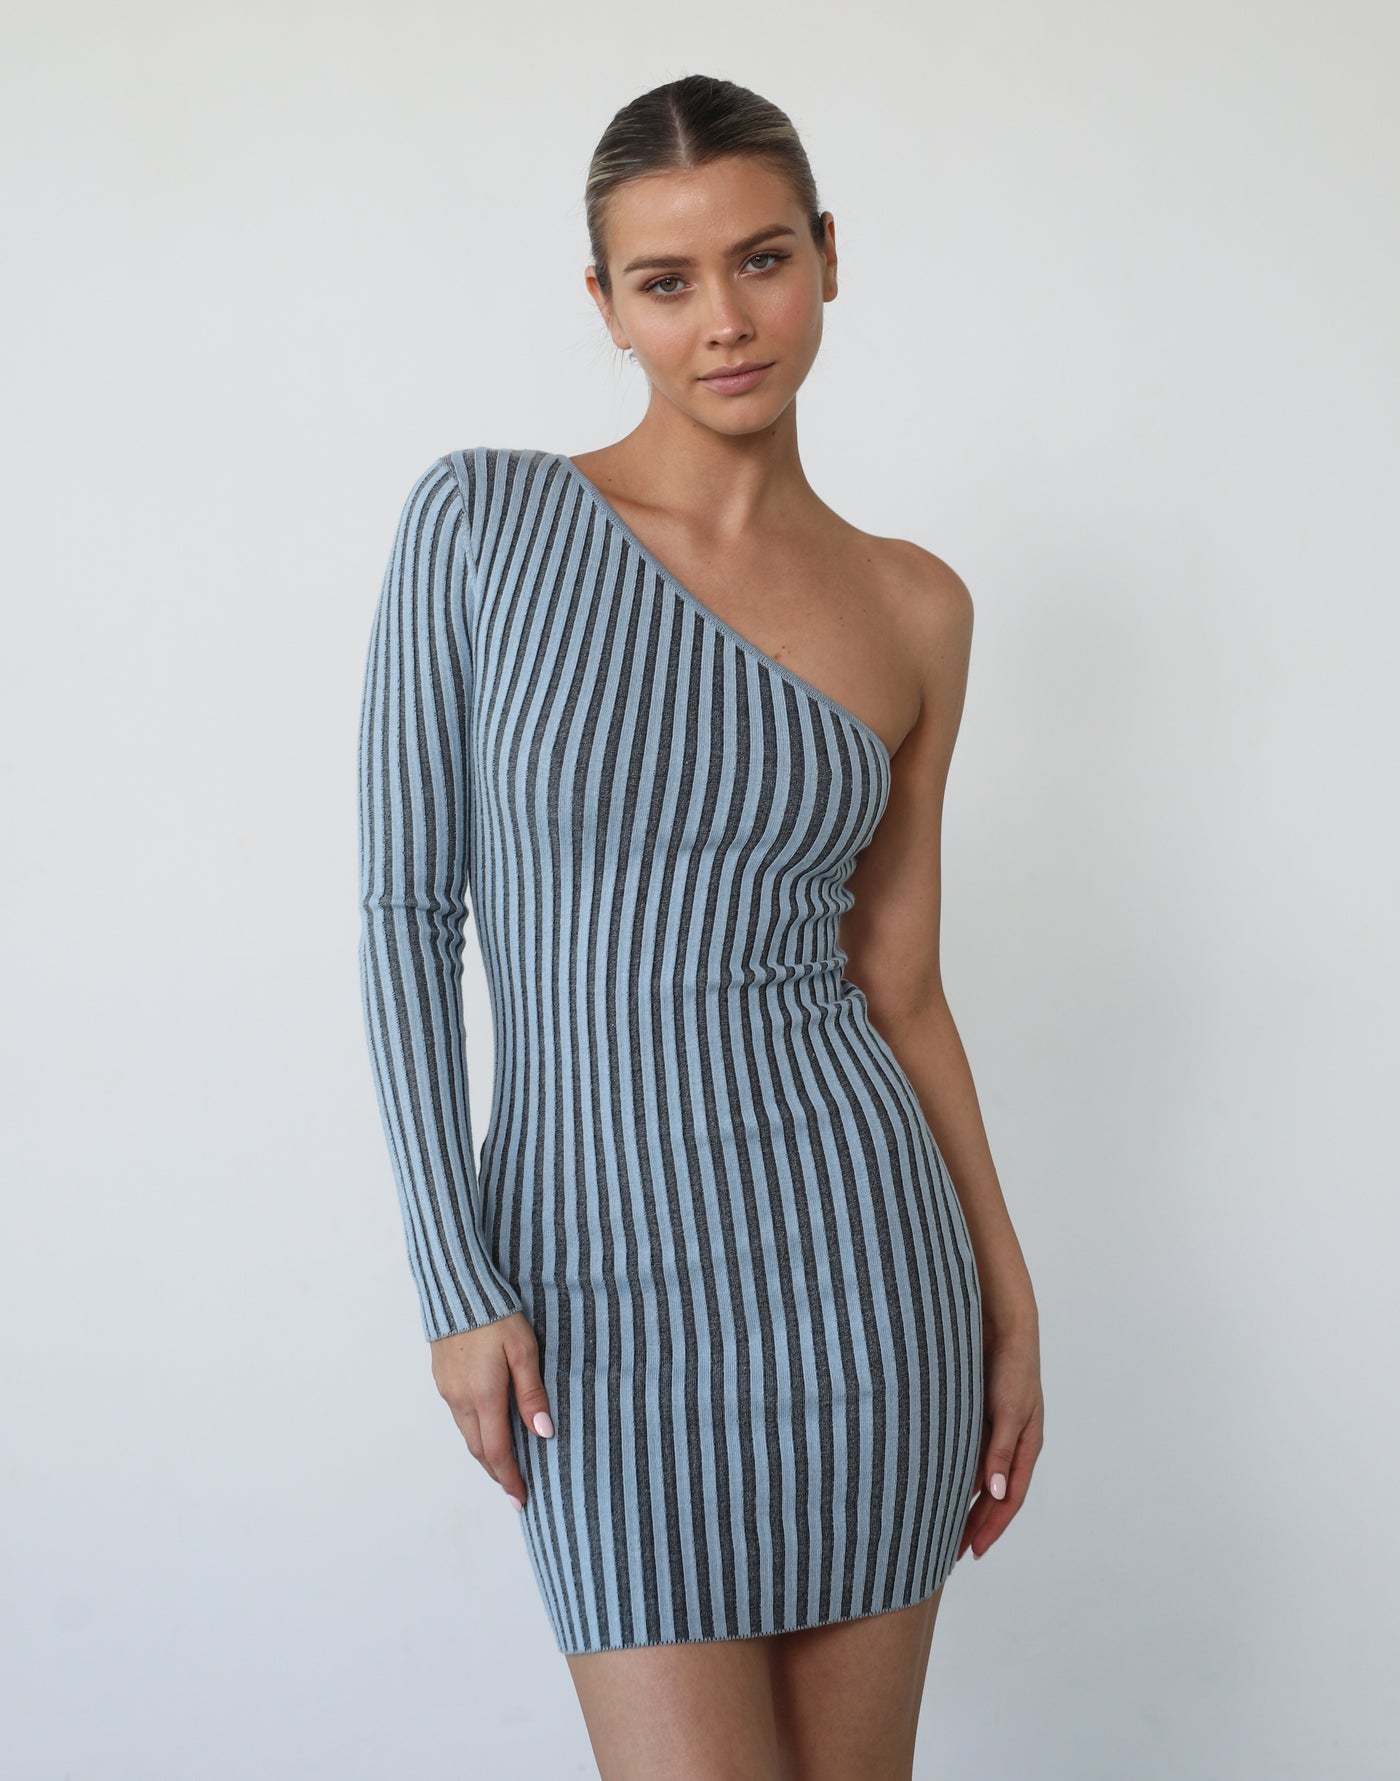 Lapis Mini Dress (Blue) - One Sleeve Knit Mini Dress - Women's Dress - Charcoal Clothing